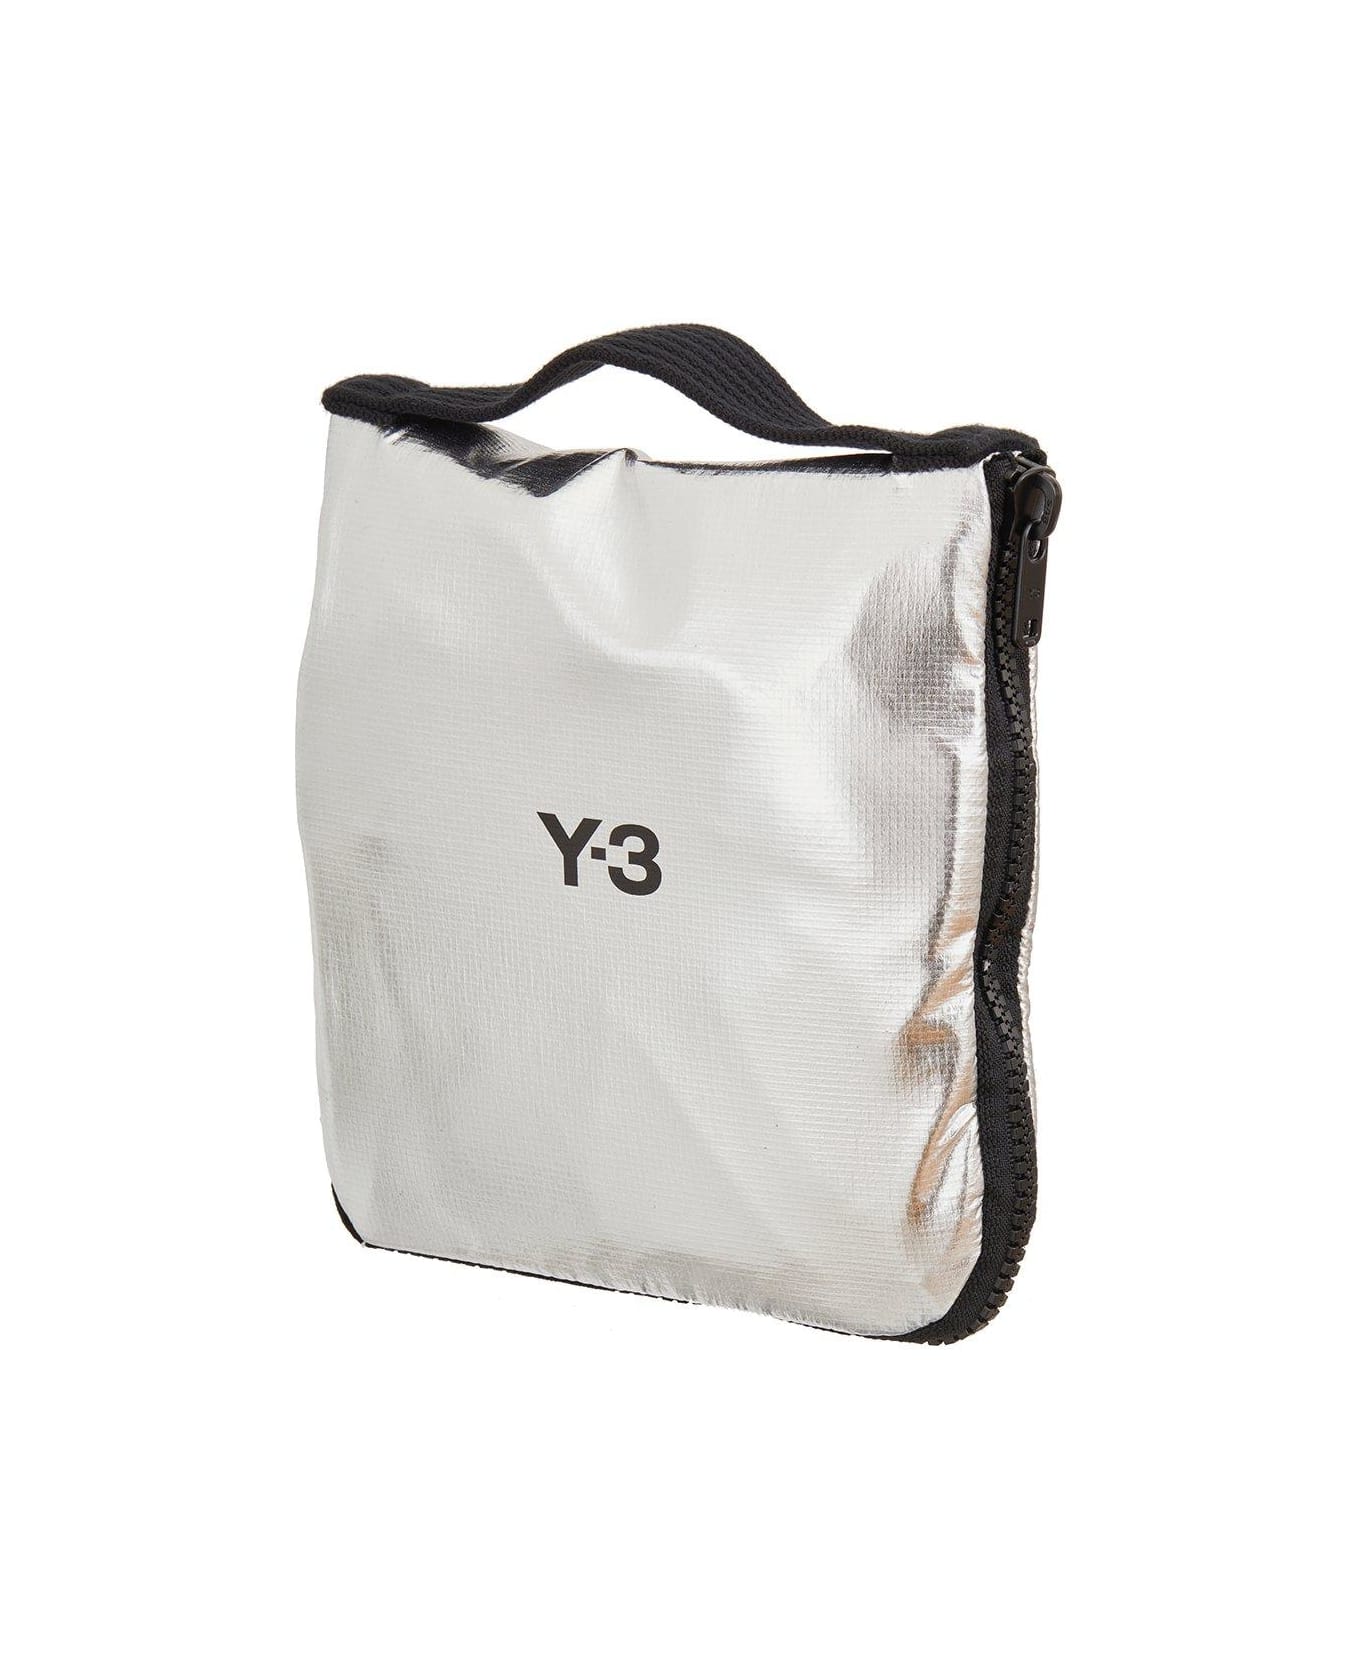 Y-3 Logo Printed Zip-around Packable Tote Bag